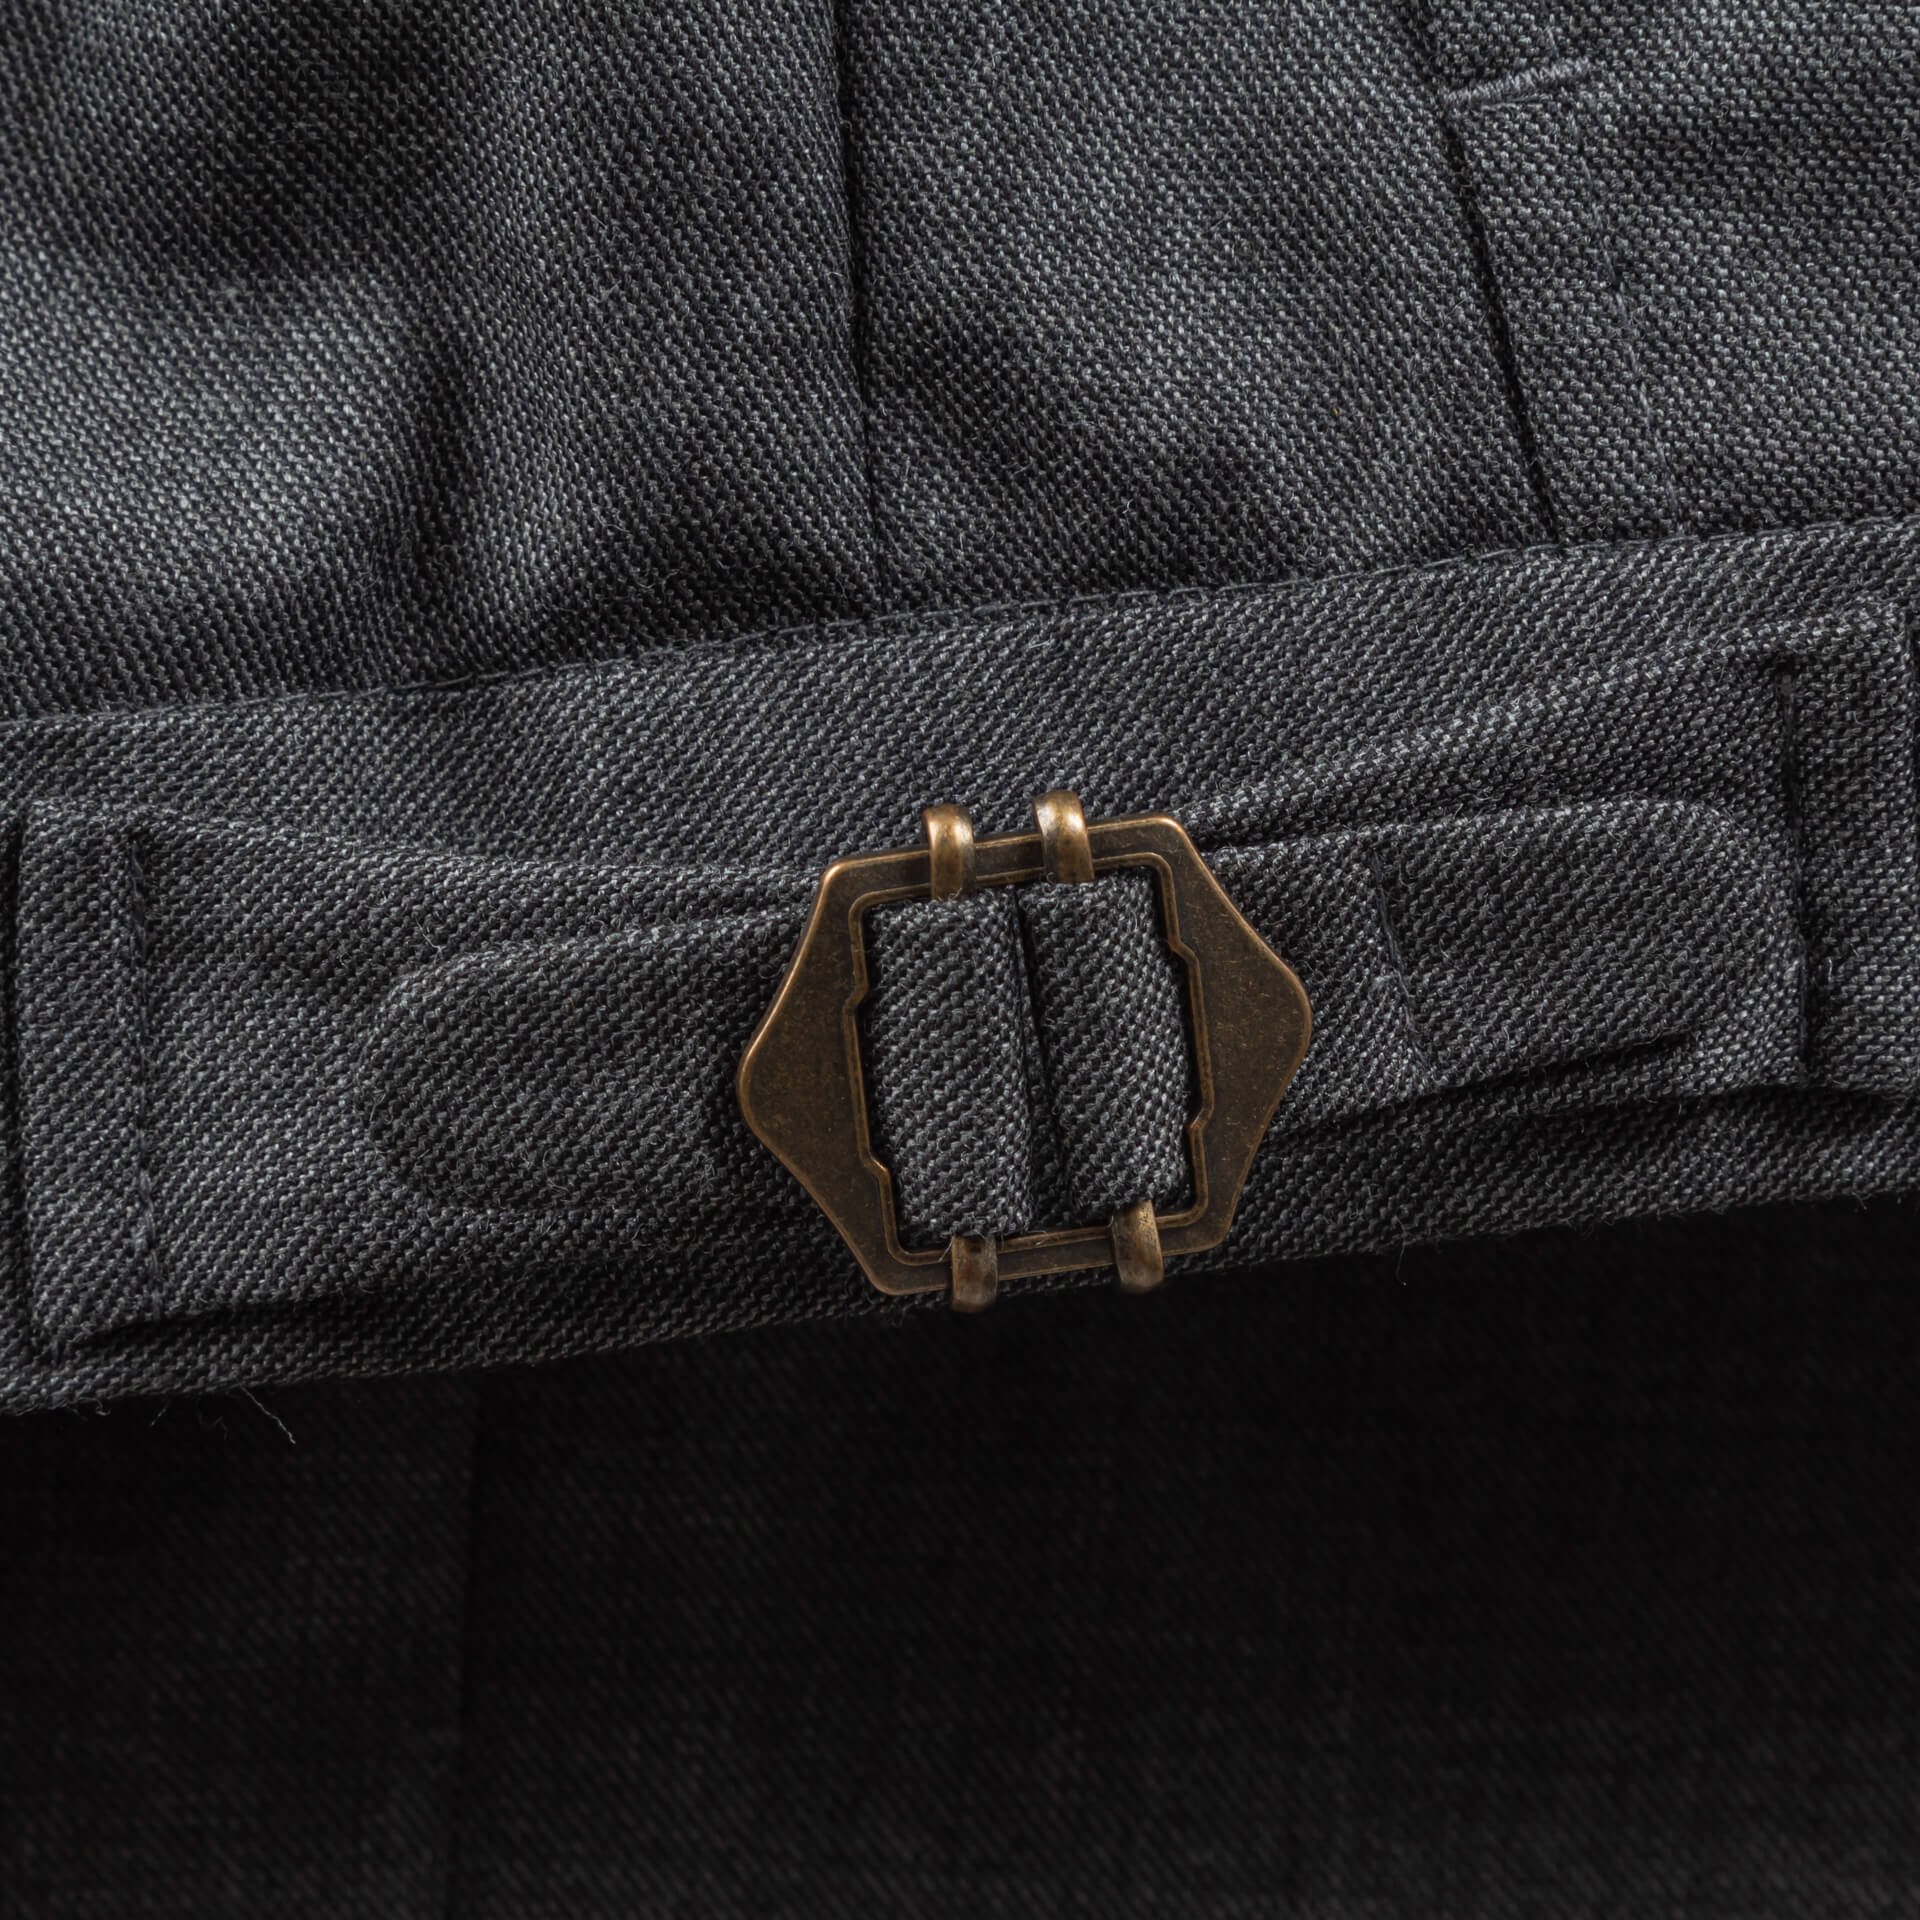 Zijtrekker van brons kleurig metaal op de broekband van een grijze sharkskin pak broek